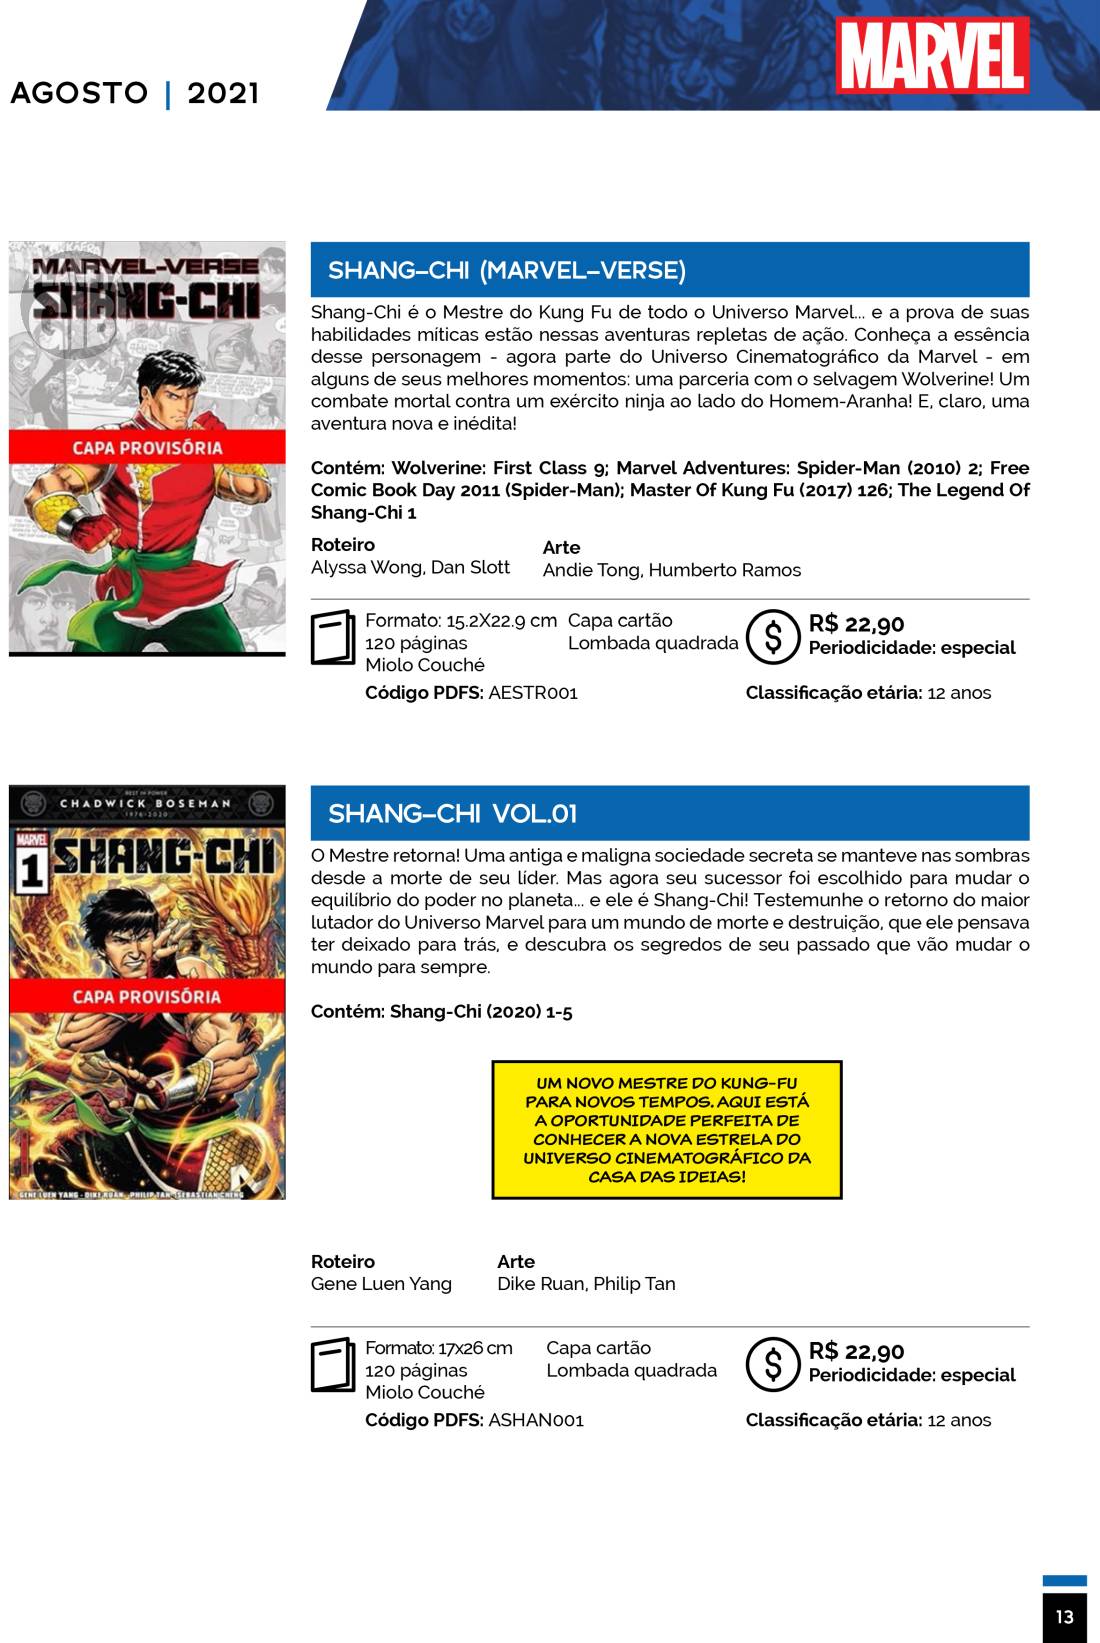 7 - Checklist Marvel/Panini (Julho/2020 - pág.09) - Página 9 Catalogo-Julho-Agosto-13